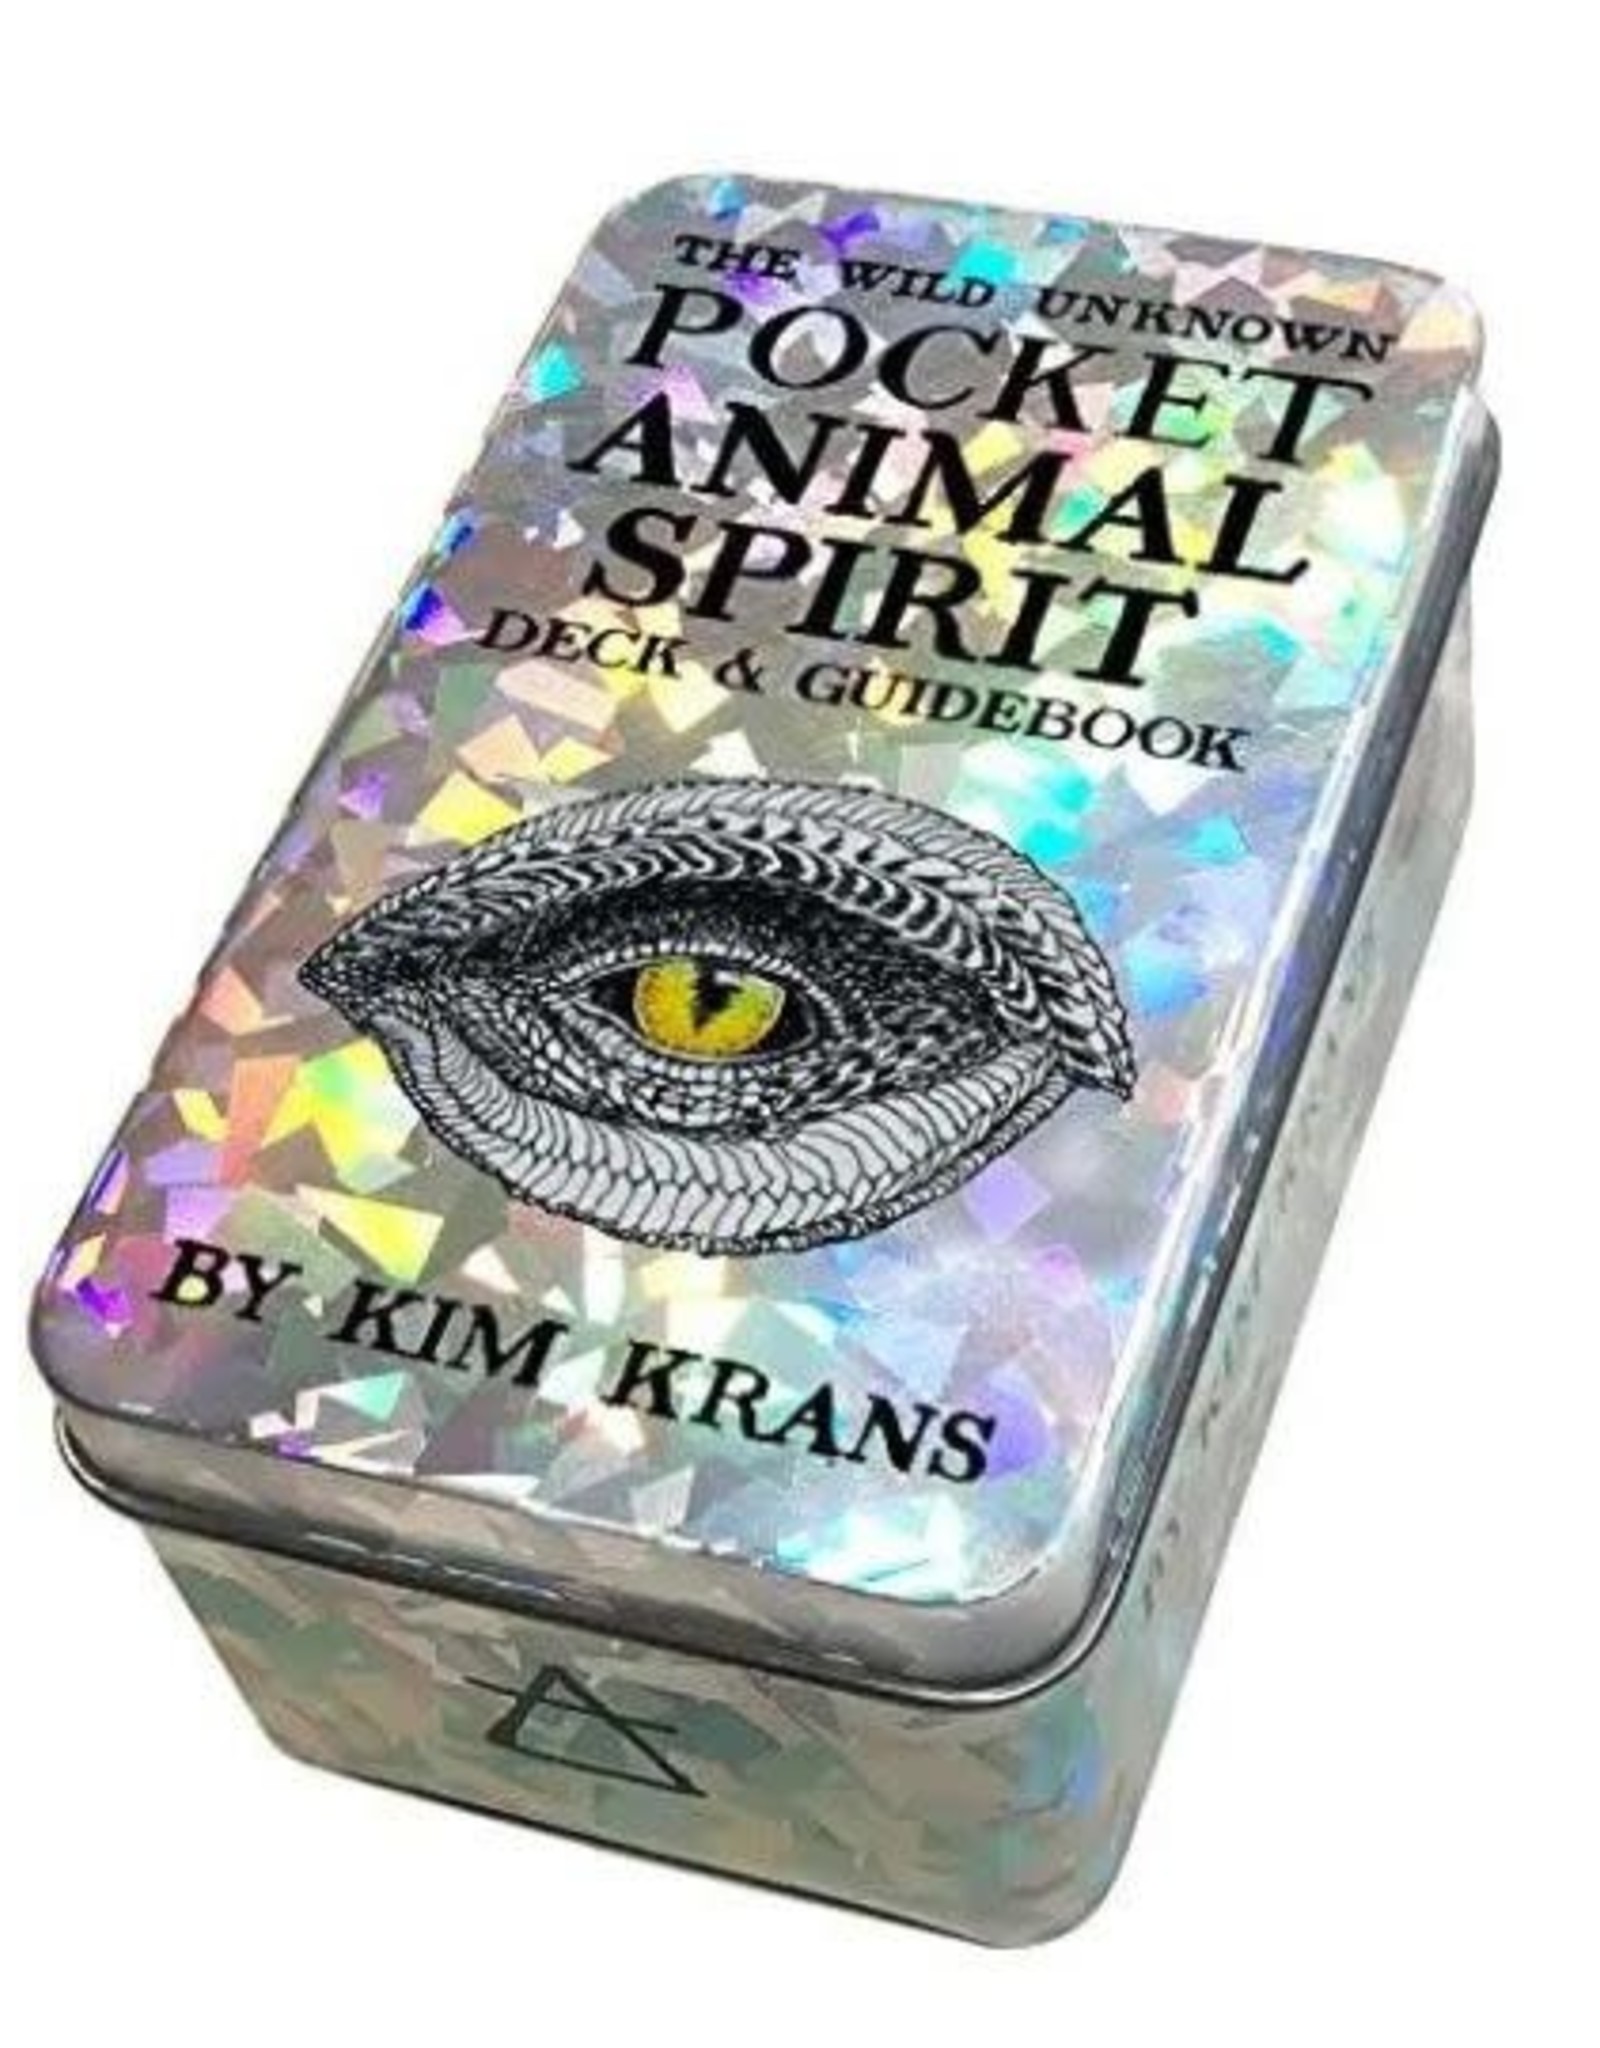 Kim Krans Wild Unknown Pocket Animal Spirit Deck by Kim Krans